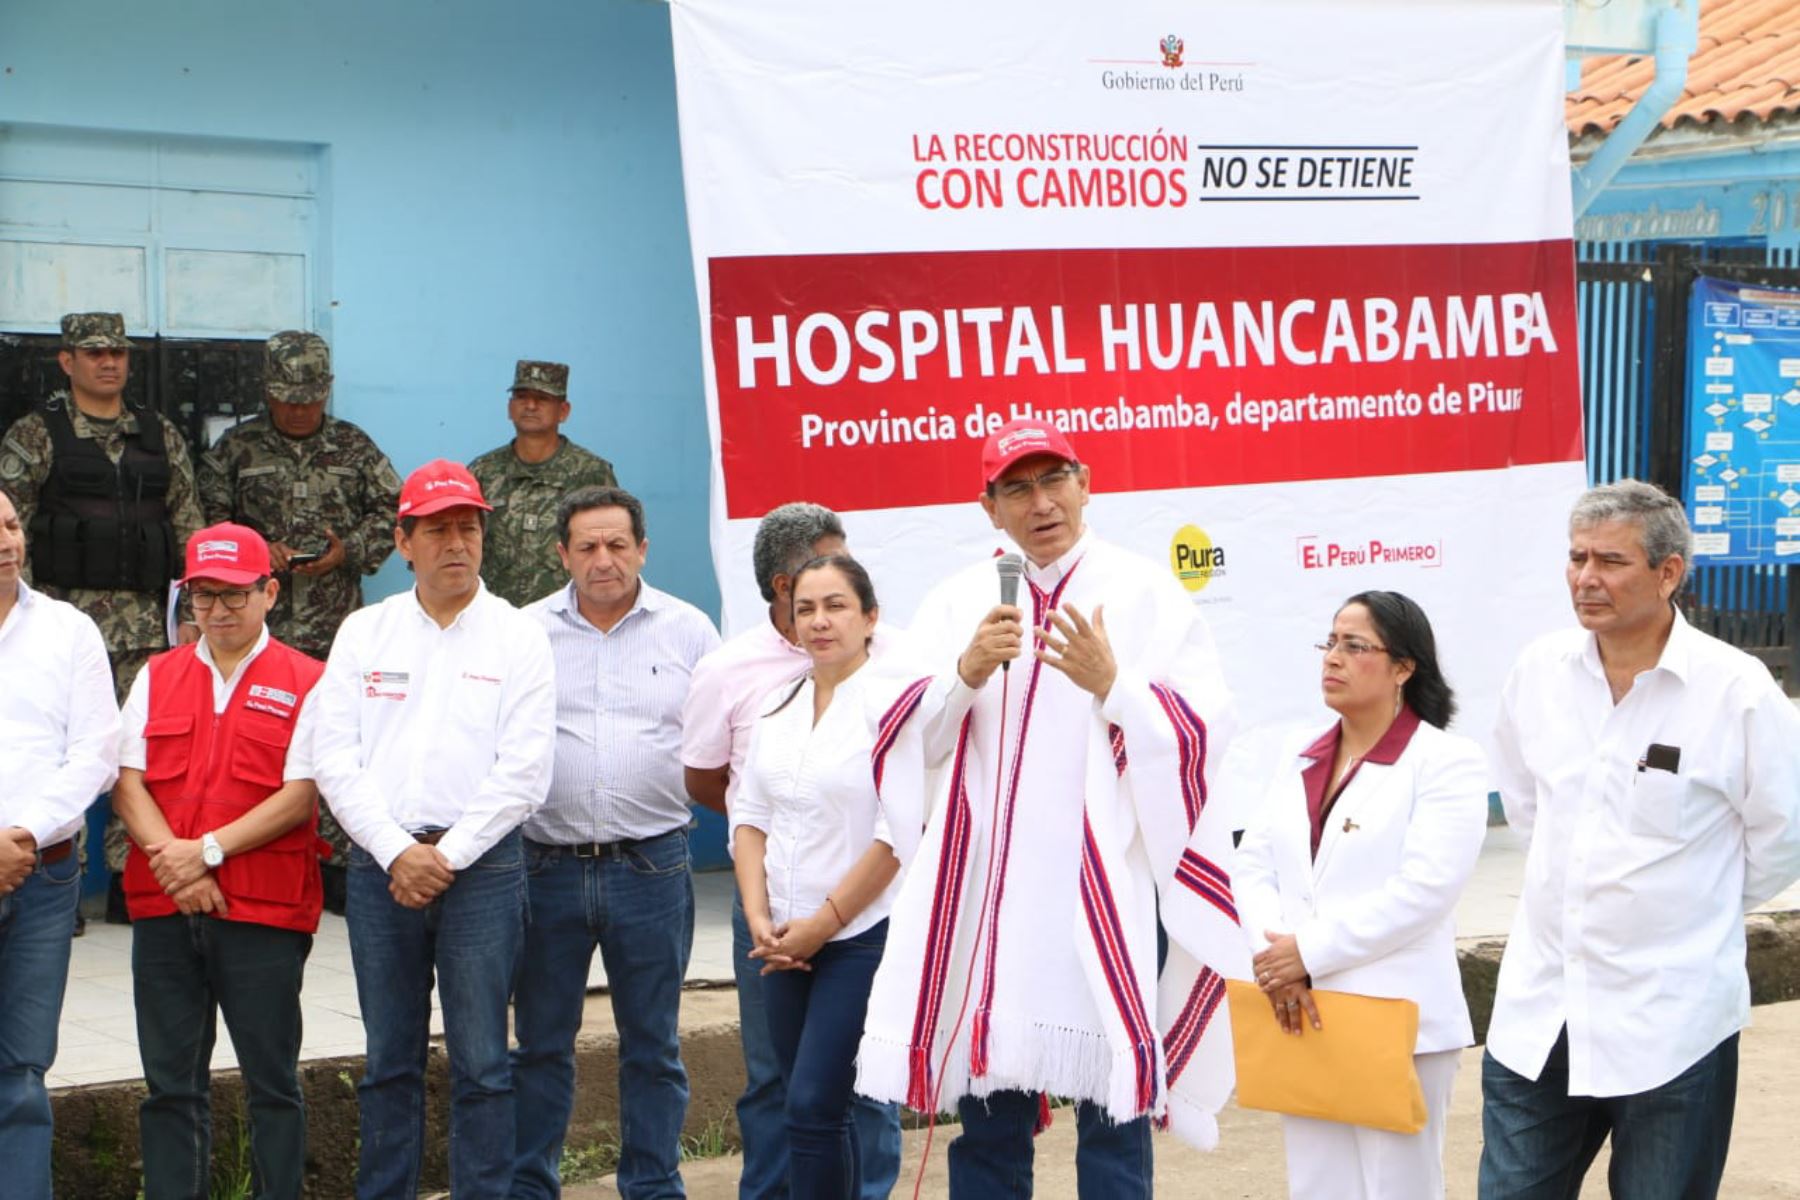 Más de 140,000 piuranos se beneficiarán con la reconstrucción de tres hospitales que ejecutará el Gobierno. ANDINA/Difusión